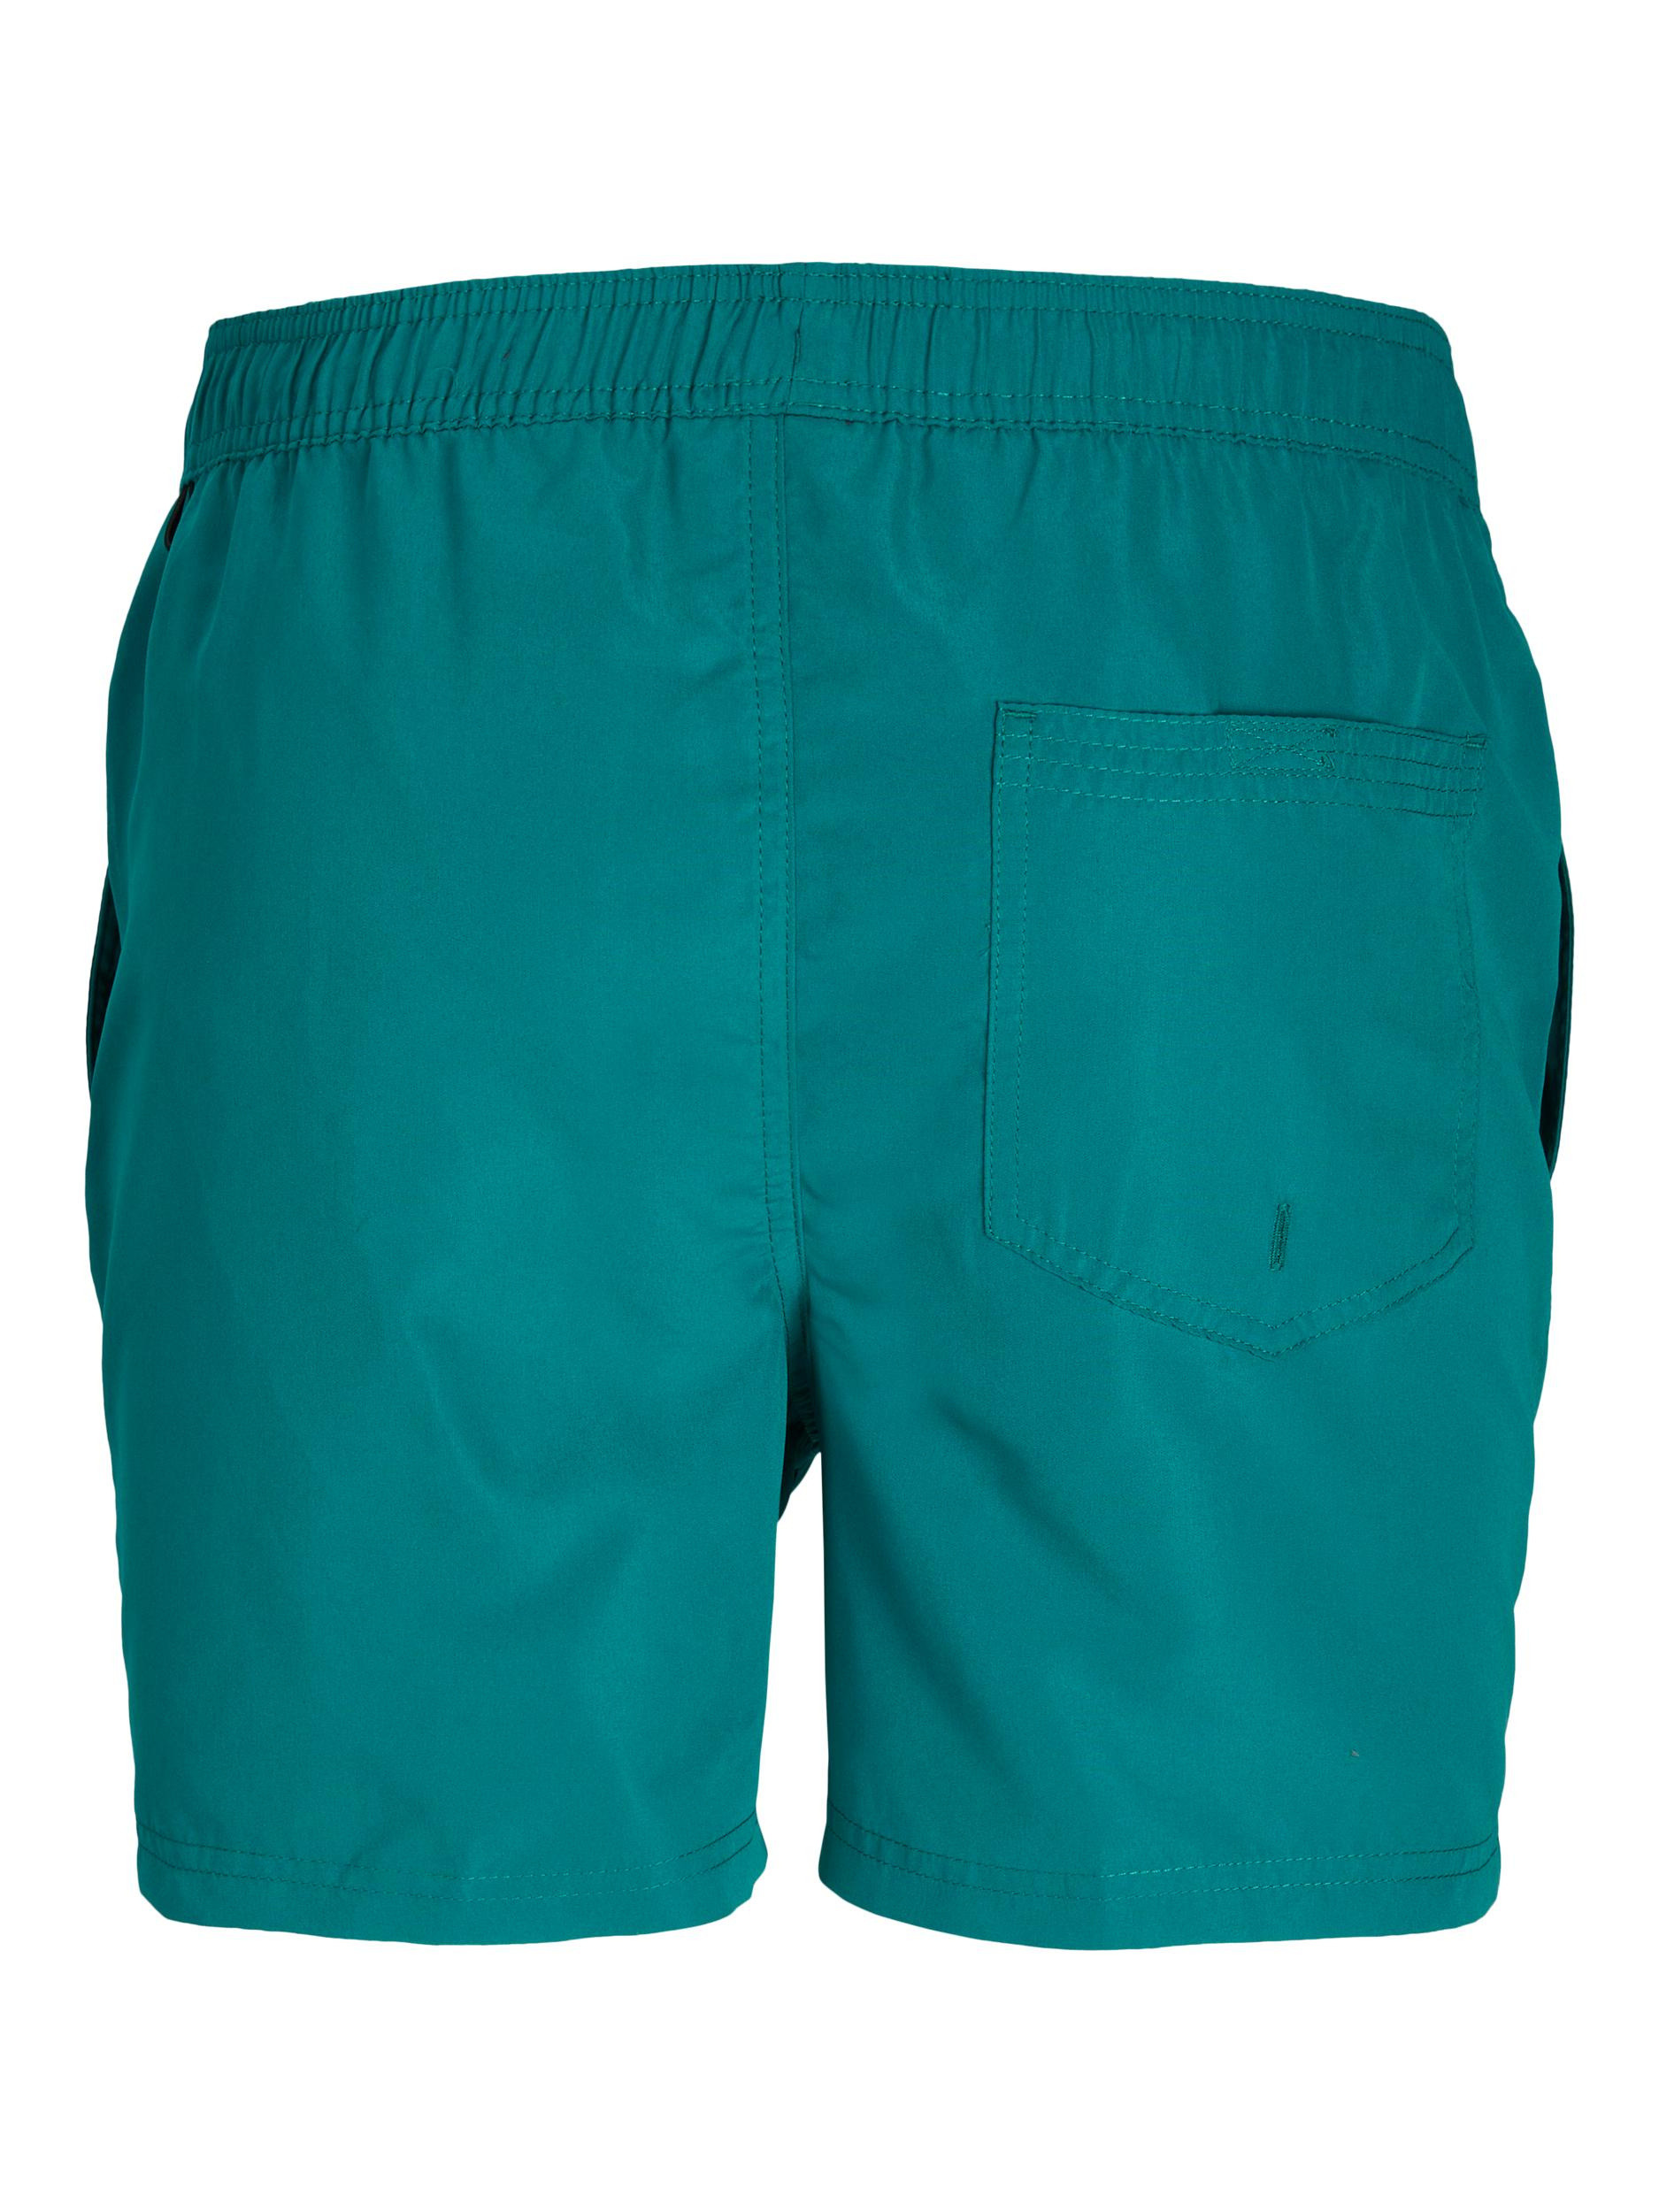 Jack & Jones - Regular fit swim trunks, Green, large image number 1